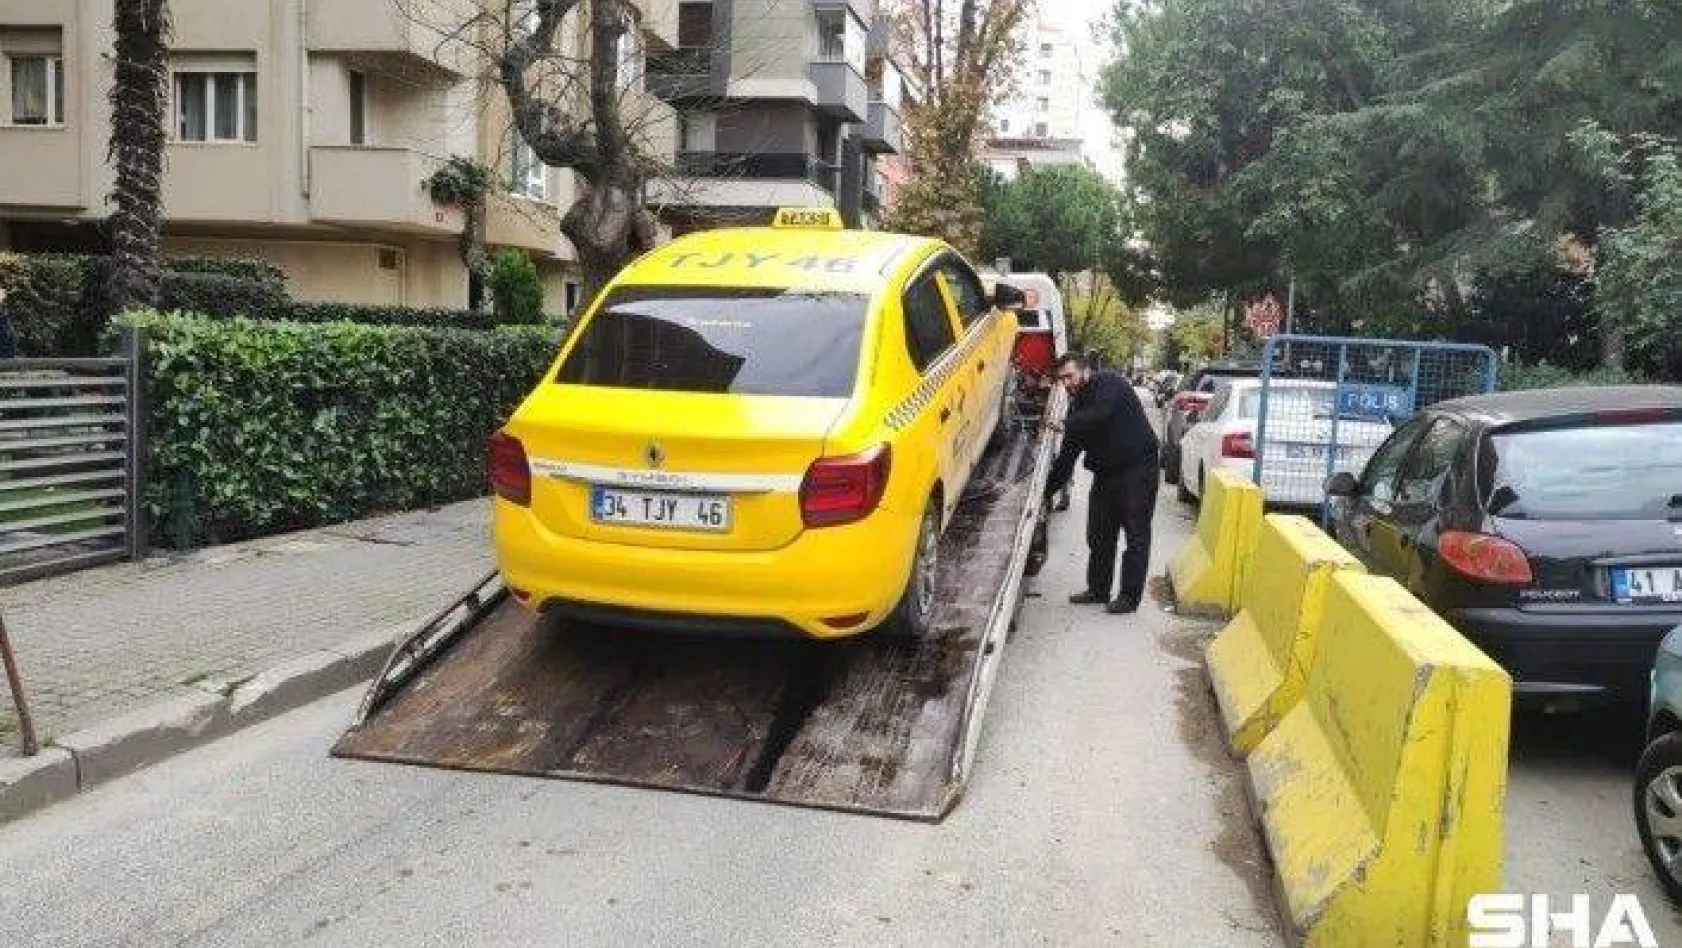 Kadıköy'de müşterisine hakaret eden taksicinin araç kullanım belgesi iptal edildi